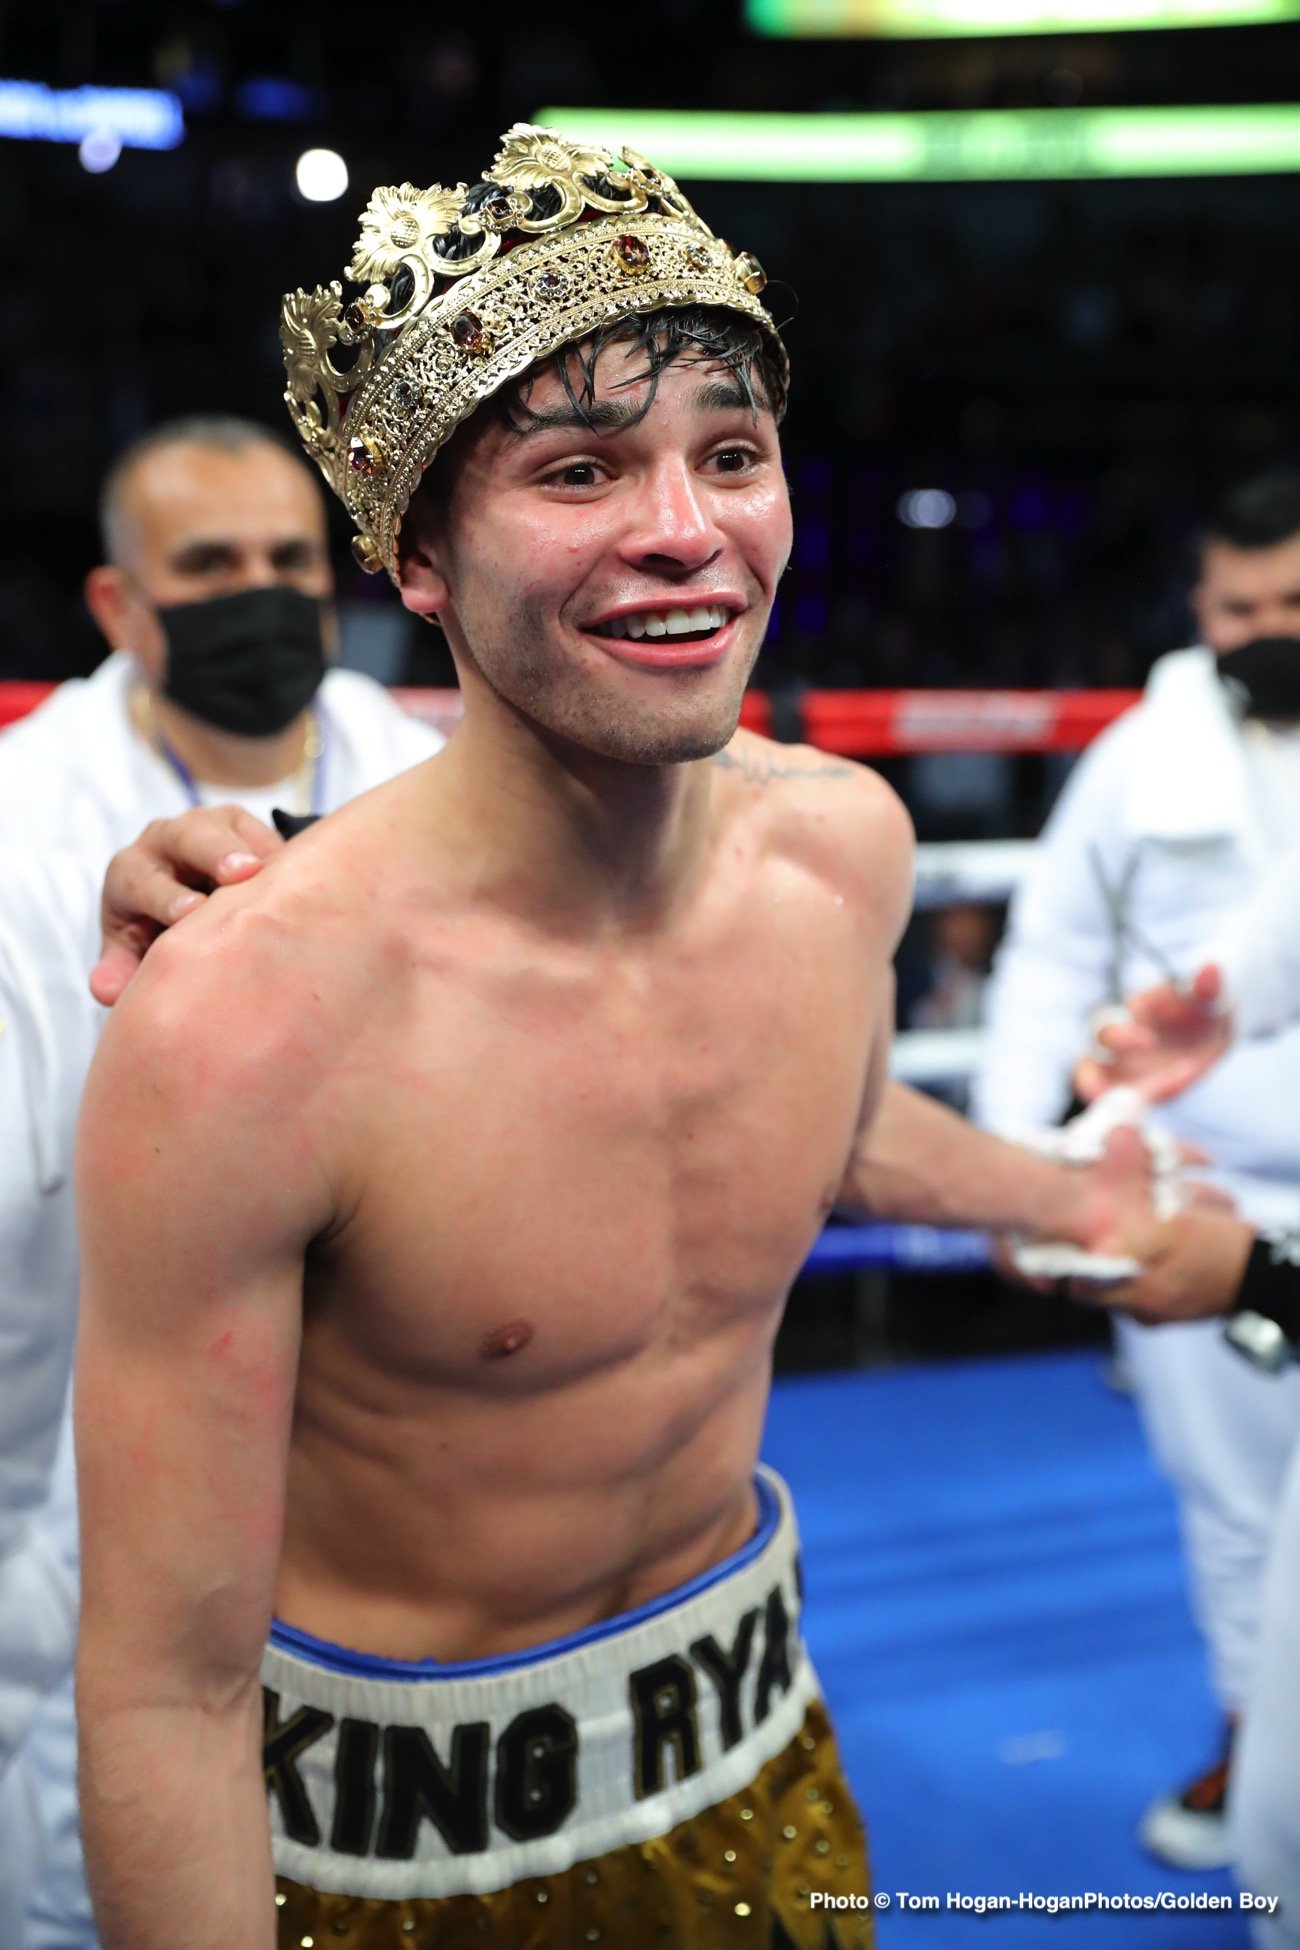 Luke Campbell, Ryan Garcia boxing image / photo